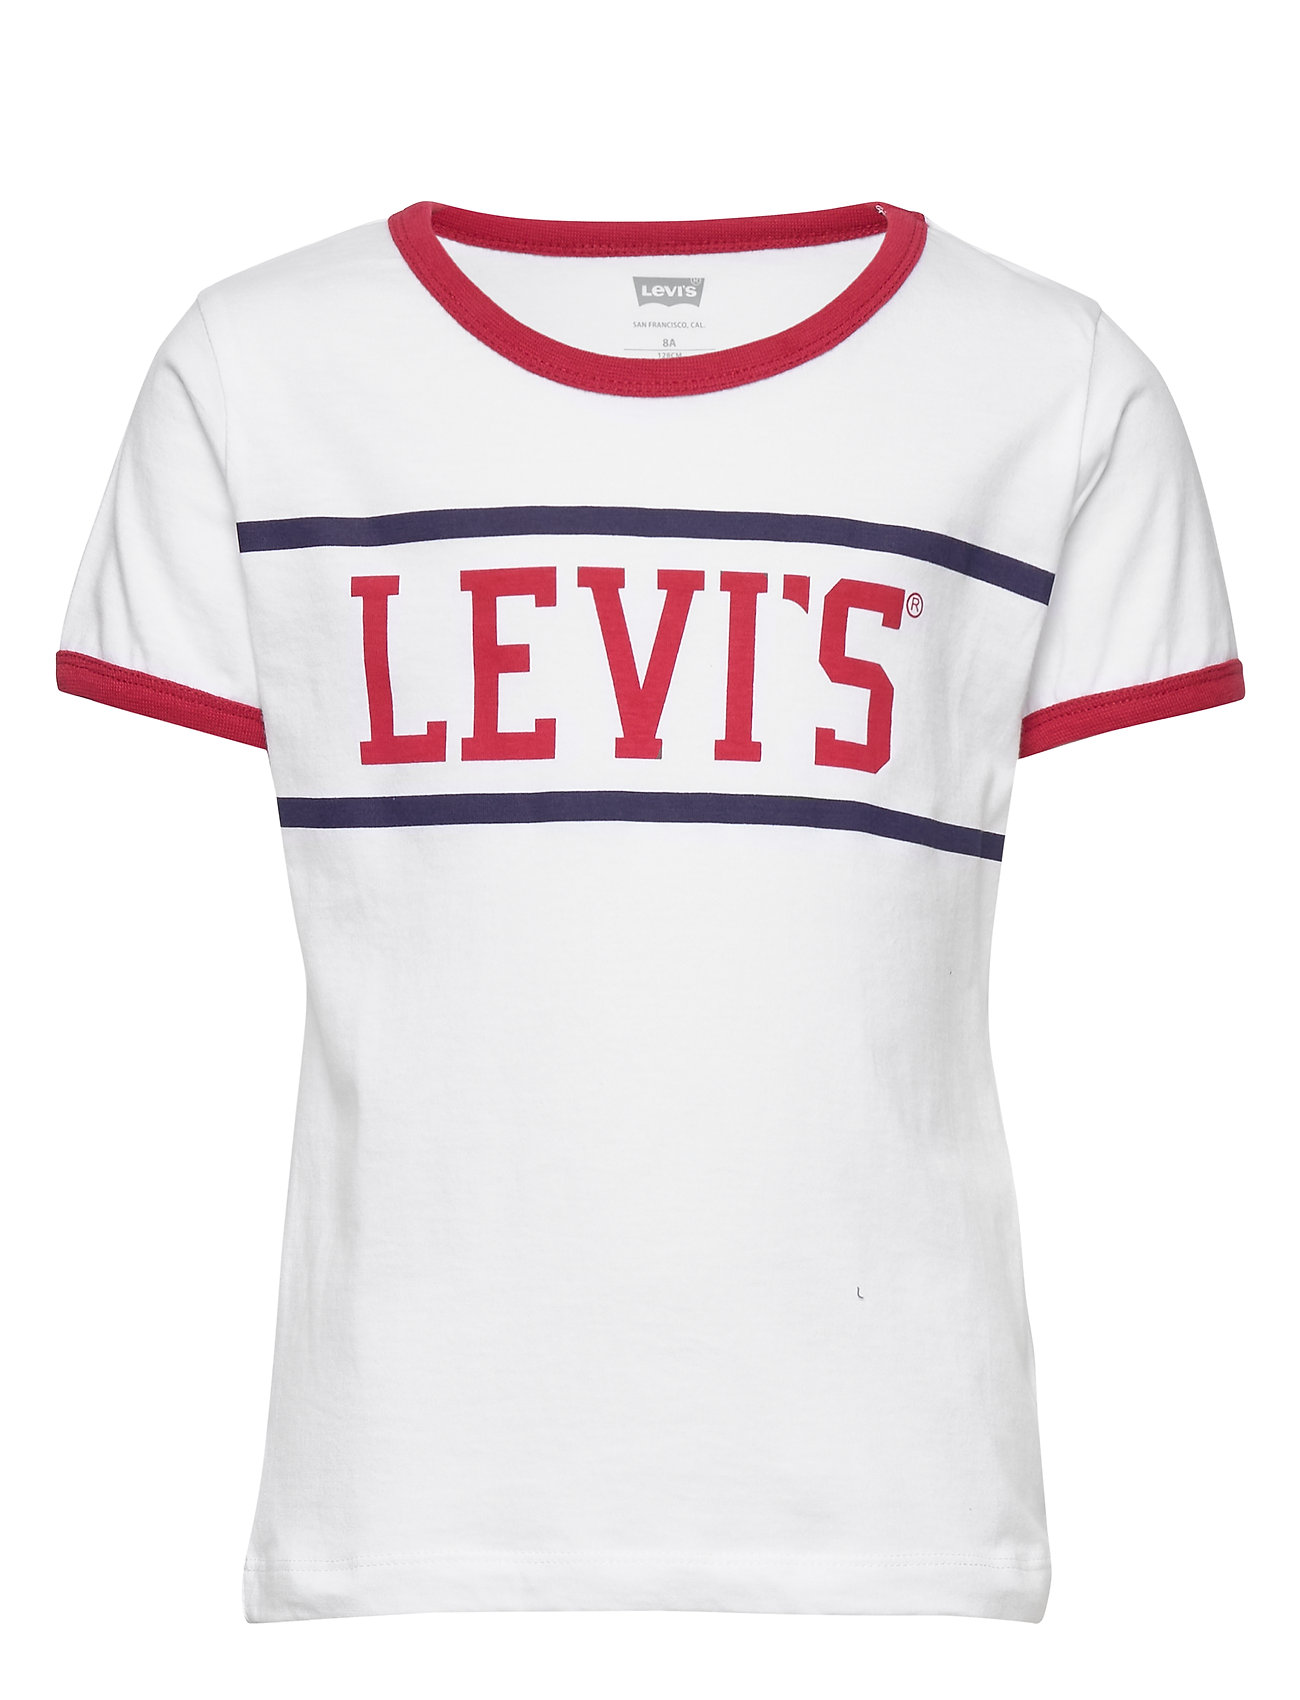 Levi's Logo Ringer Tee (White), (10.35 